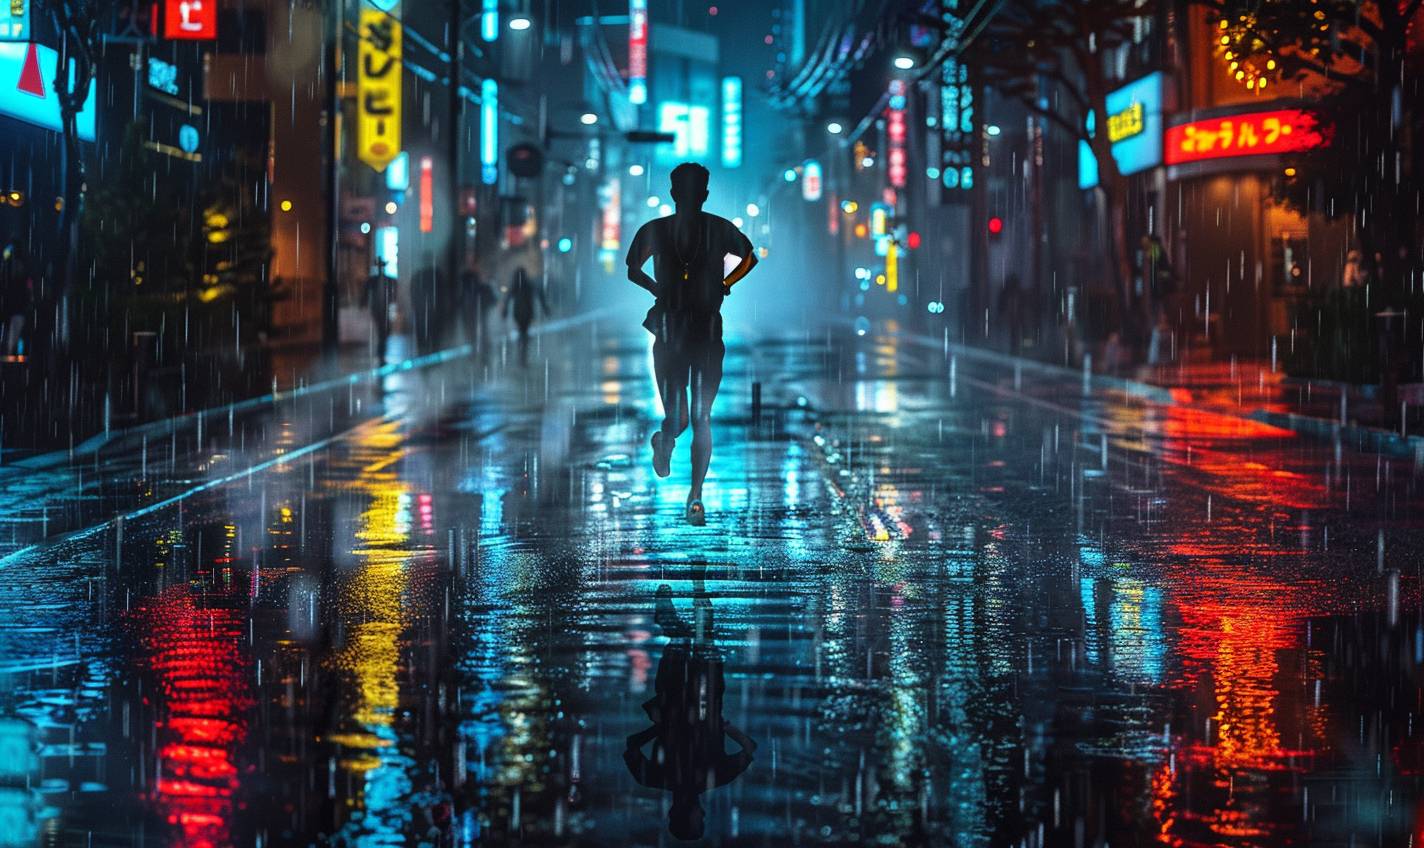 저녁이 되어 비가 적신 도시 거리를 달리는 남자. 비에 묿은 포장마찰로 반사된 네온 라이트가 그의 단호한 표정을 비추고 있다.